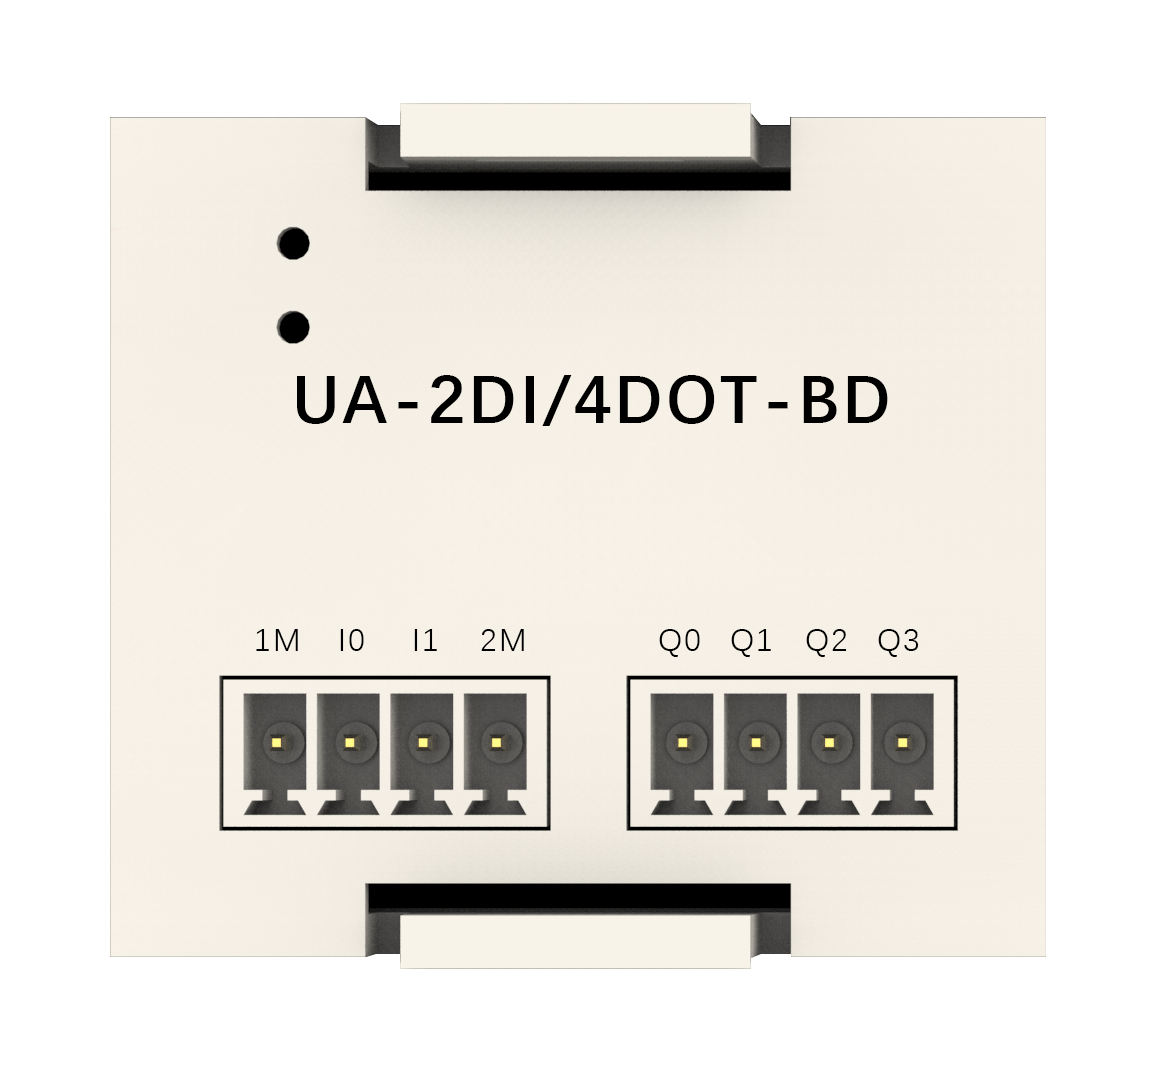 UA-2DI/4DOT-BD